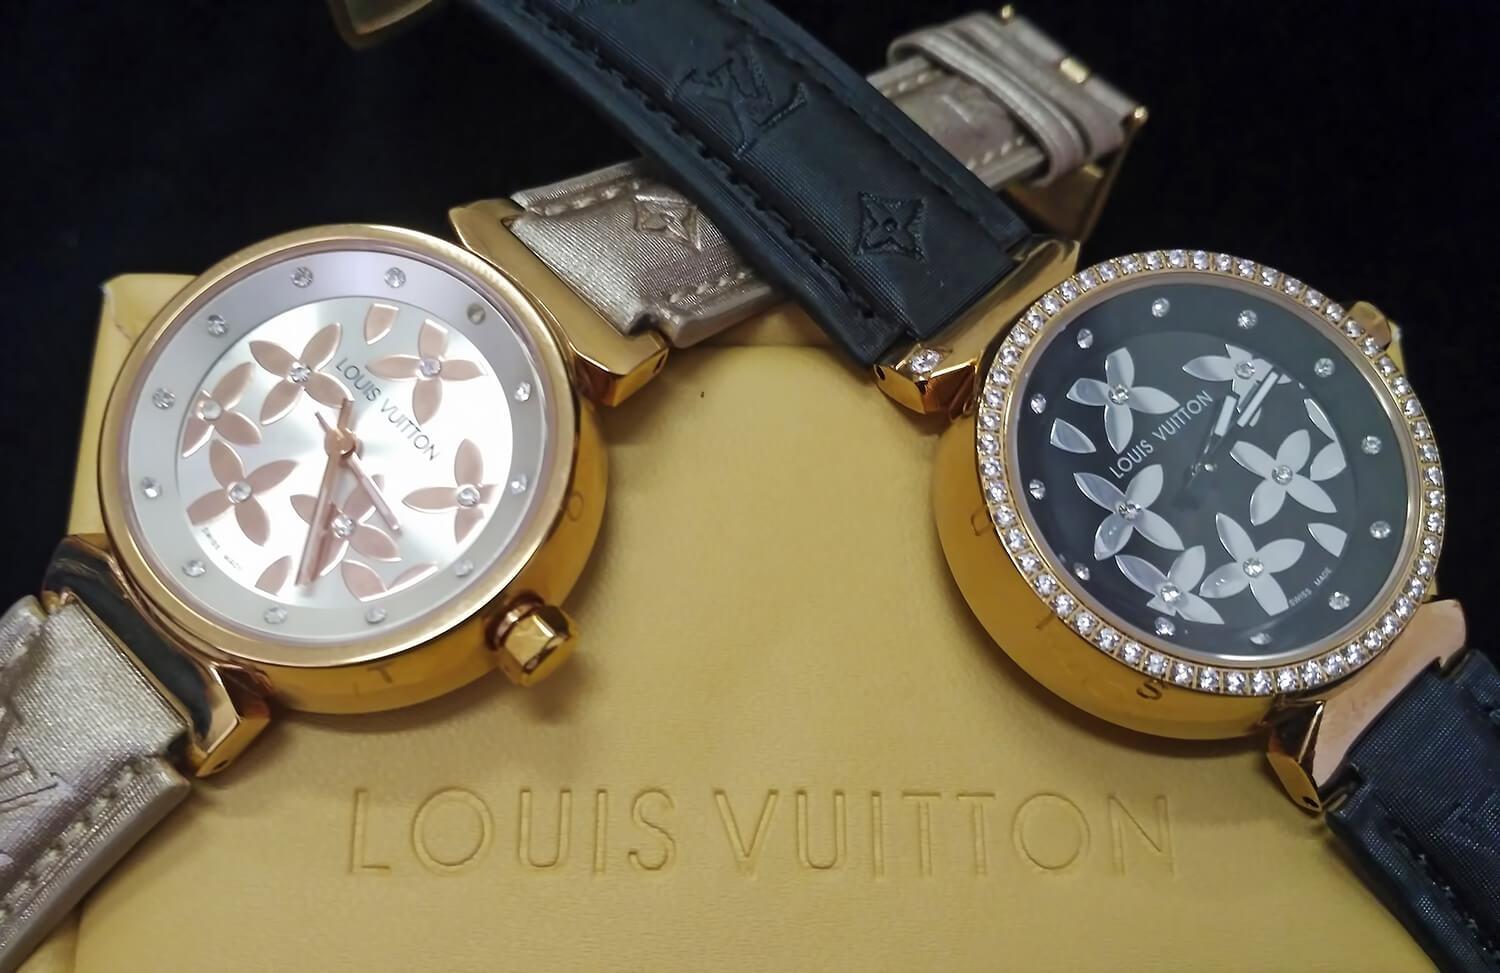 По боковой панели корпуса выгравированы 12 букв Louis Vuitton, соотносимых по месту расположения с часовыми индексами.